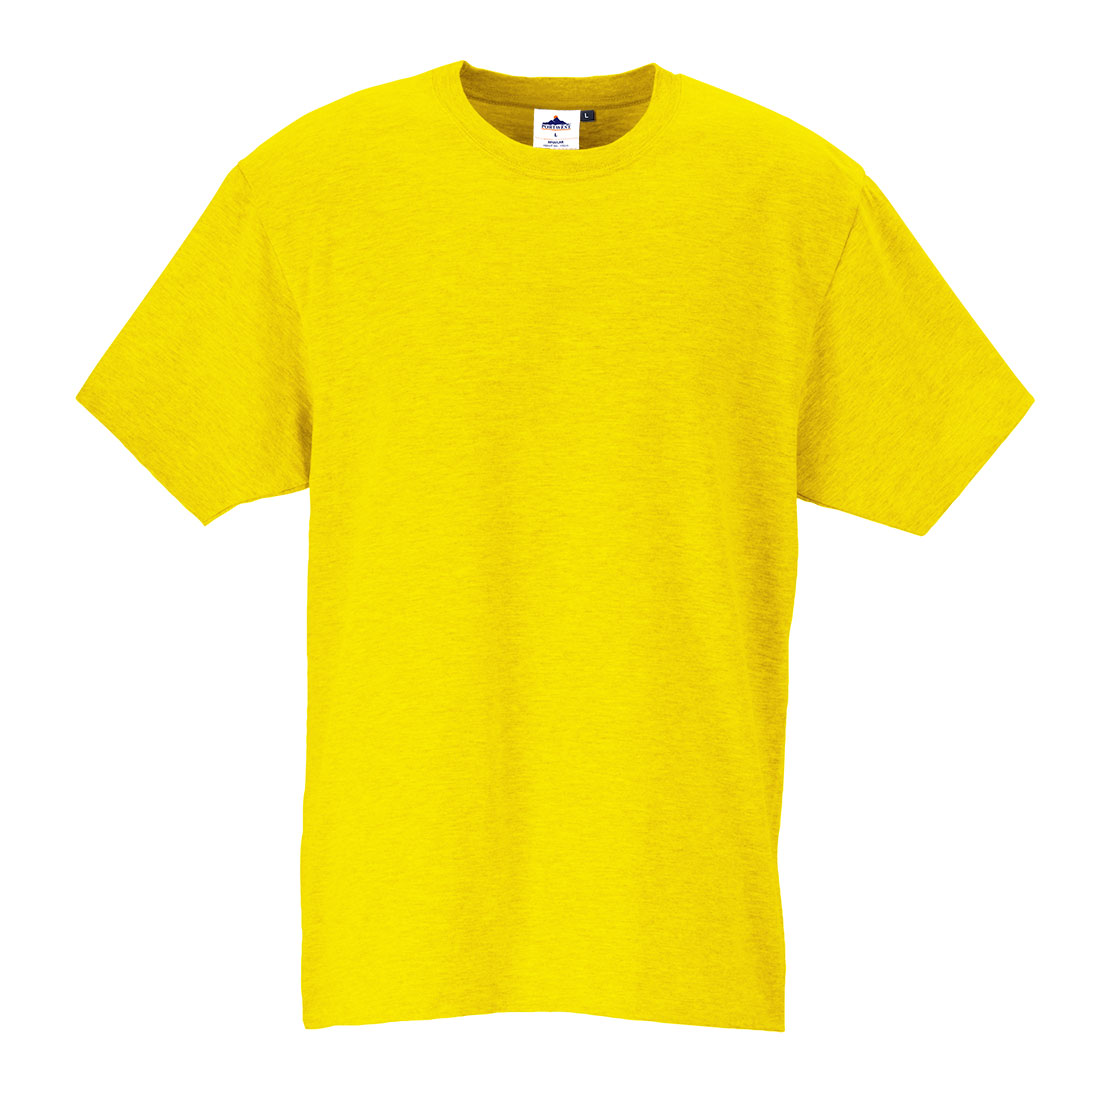 Turin Premium T-Shirt - Yellow